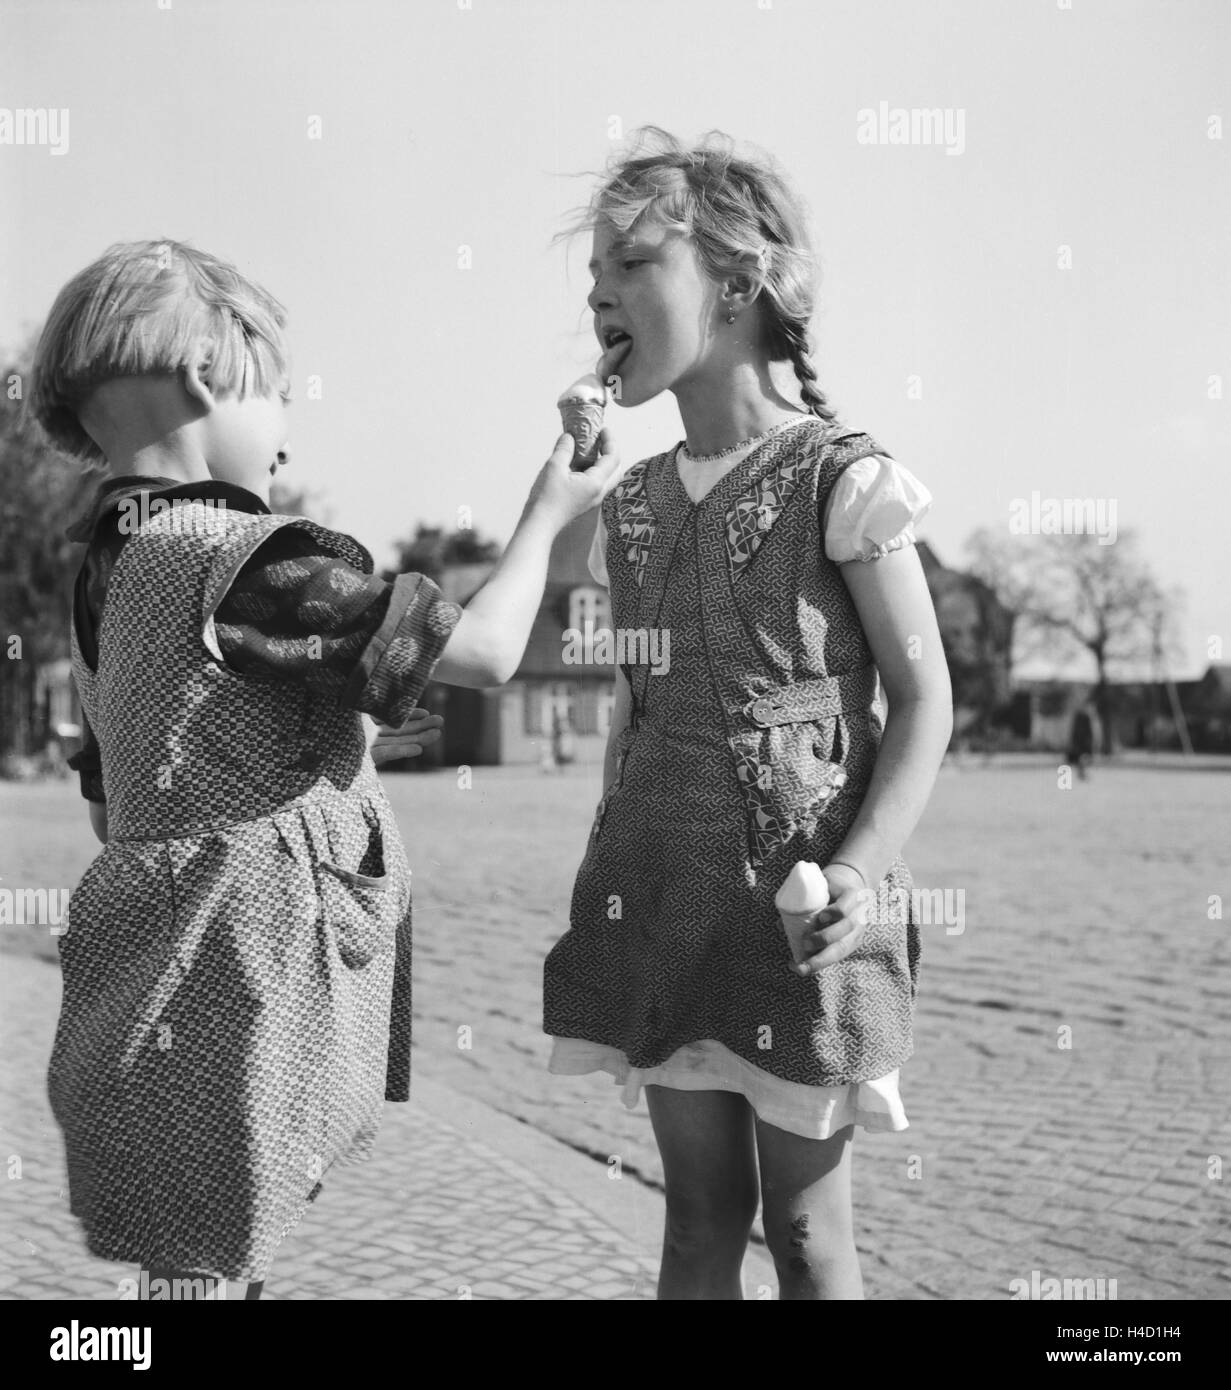 Kinder haben sich zur Sommerzeit ein Eis gekauft, Deutschland 1930er Jahre. Bambini godendo di un gelato in estate, Germania 1930s. Foto Stock